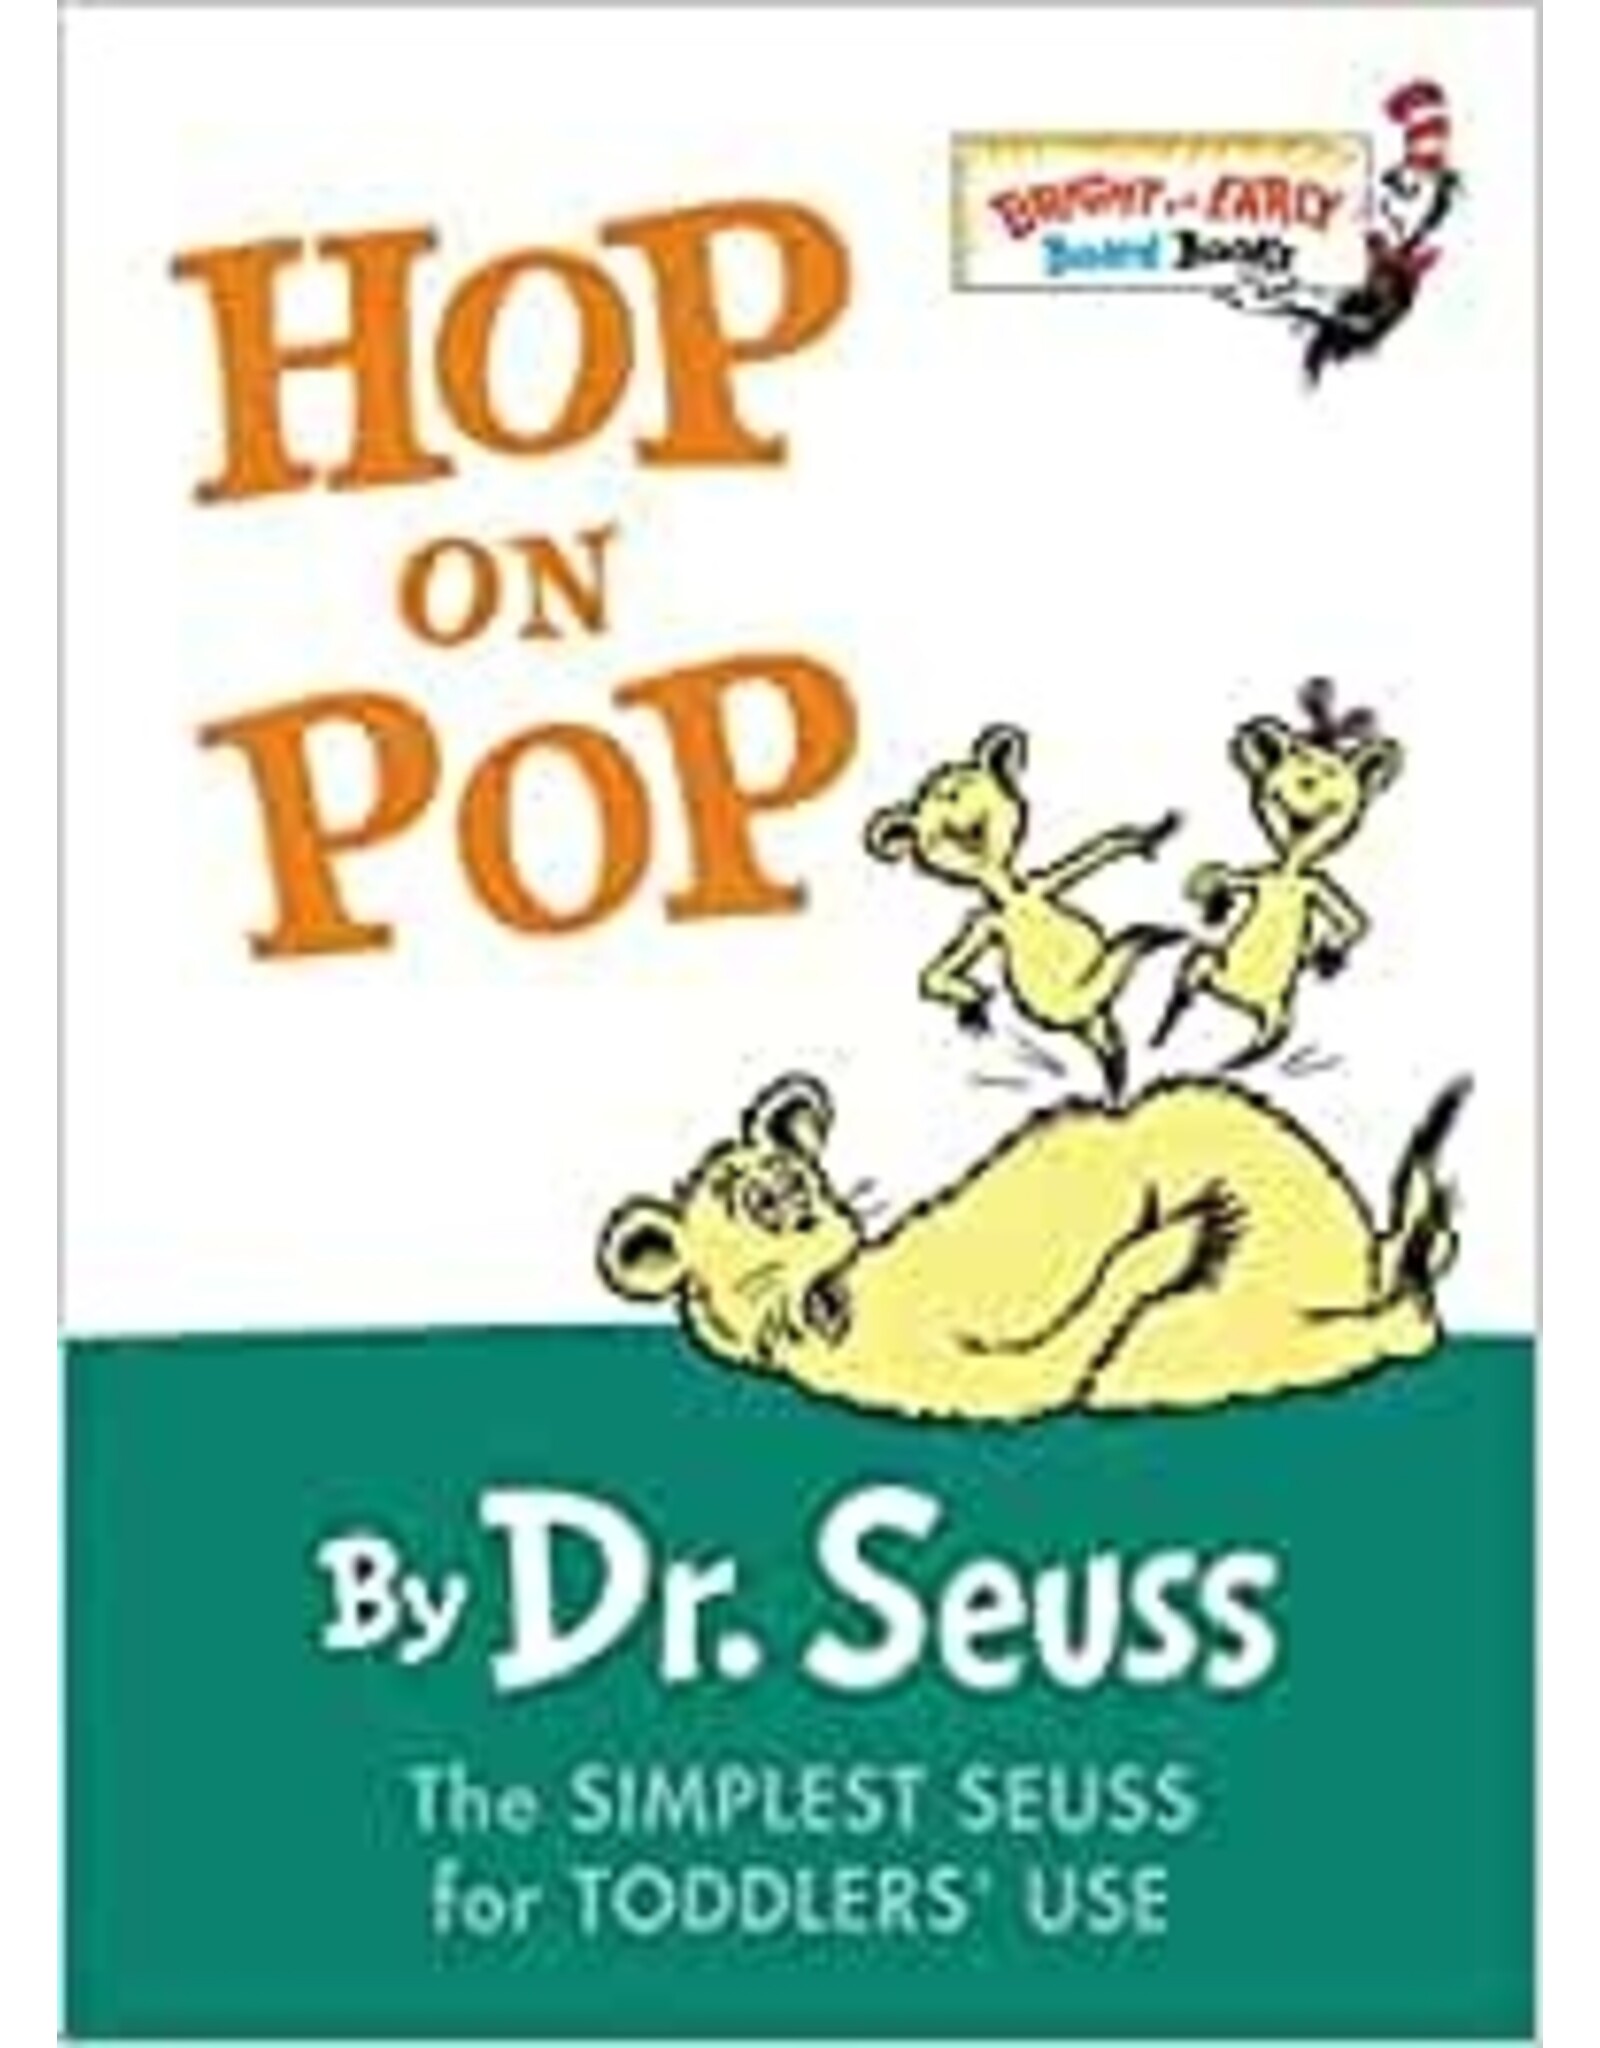 Dr. Seuss Hop on Pop by Dr. Seuss